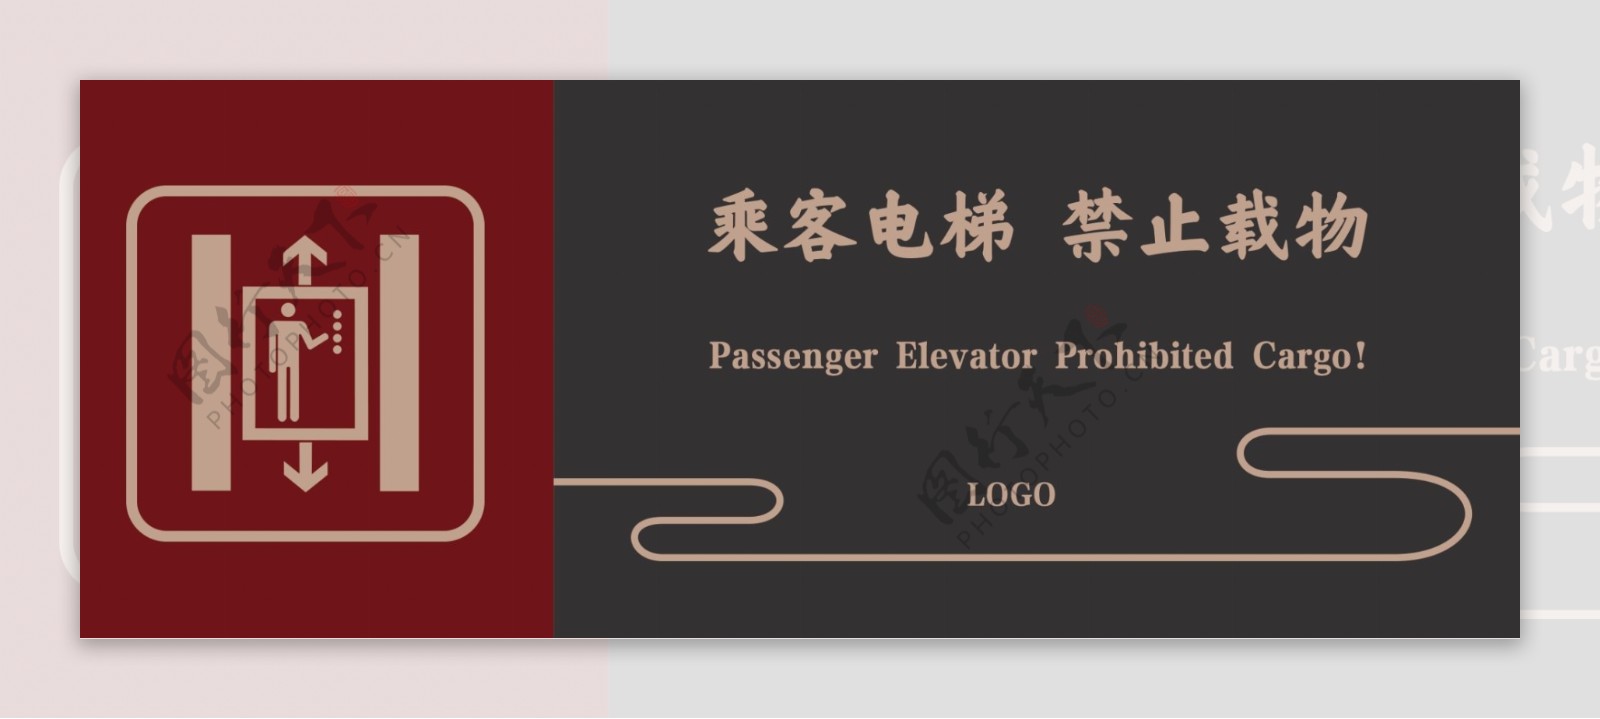 乘客电梯禁止载物